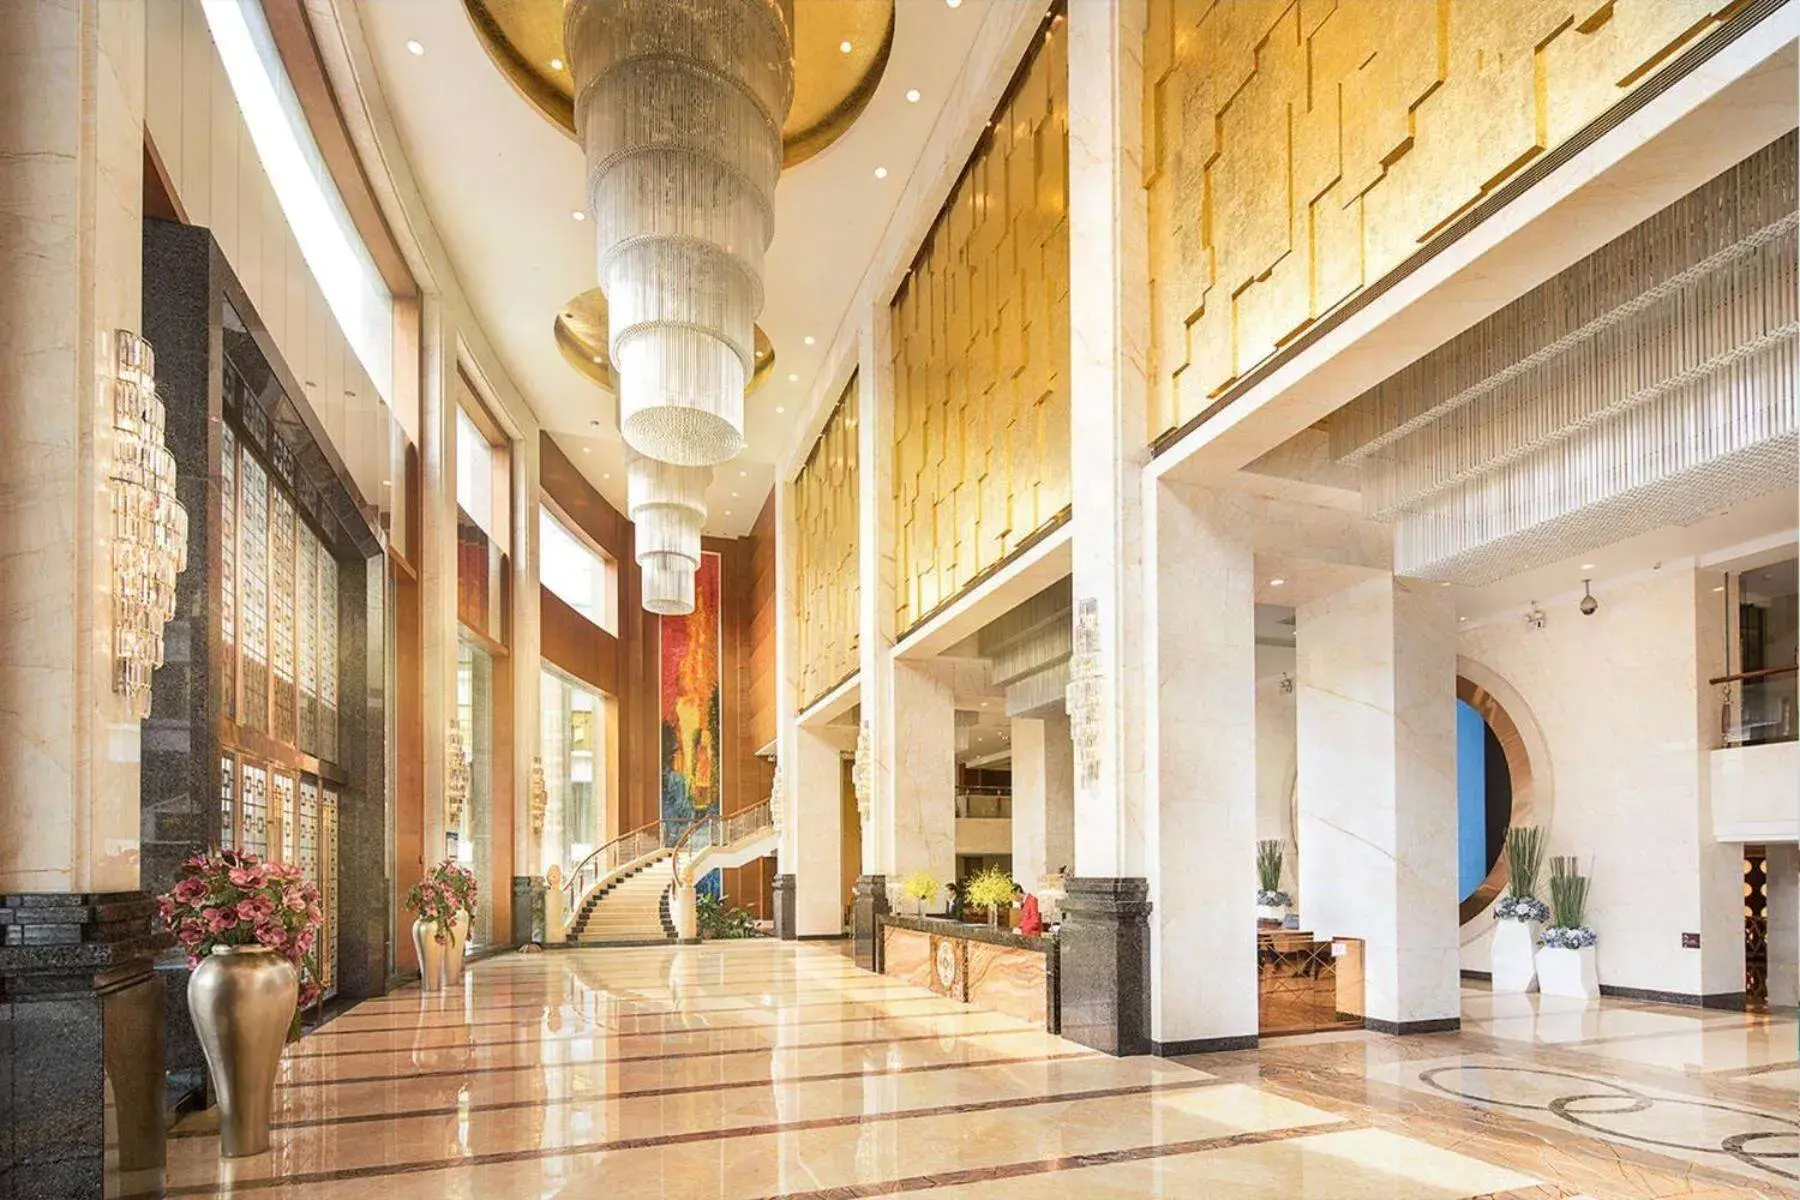 Lobby or reception, Lobby/Reception in Ramada Shenzhen Baoan